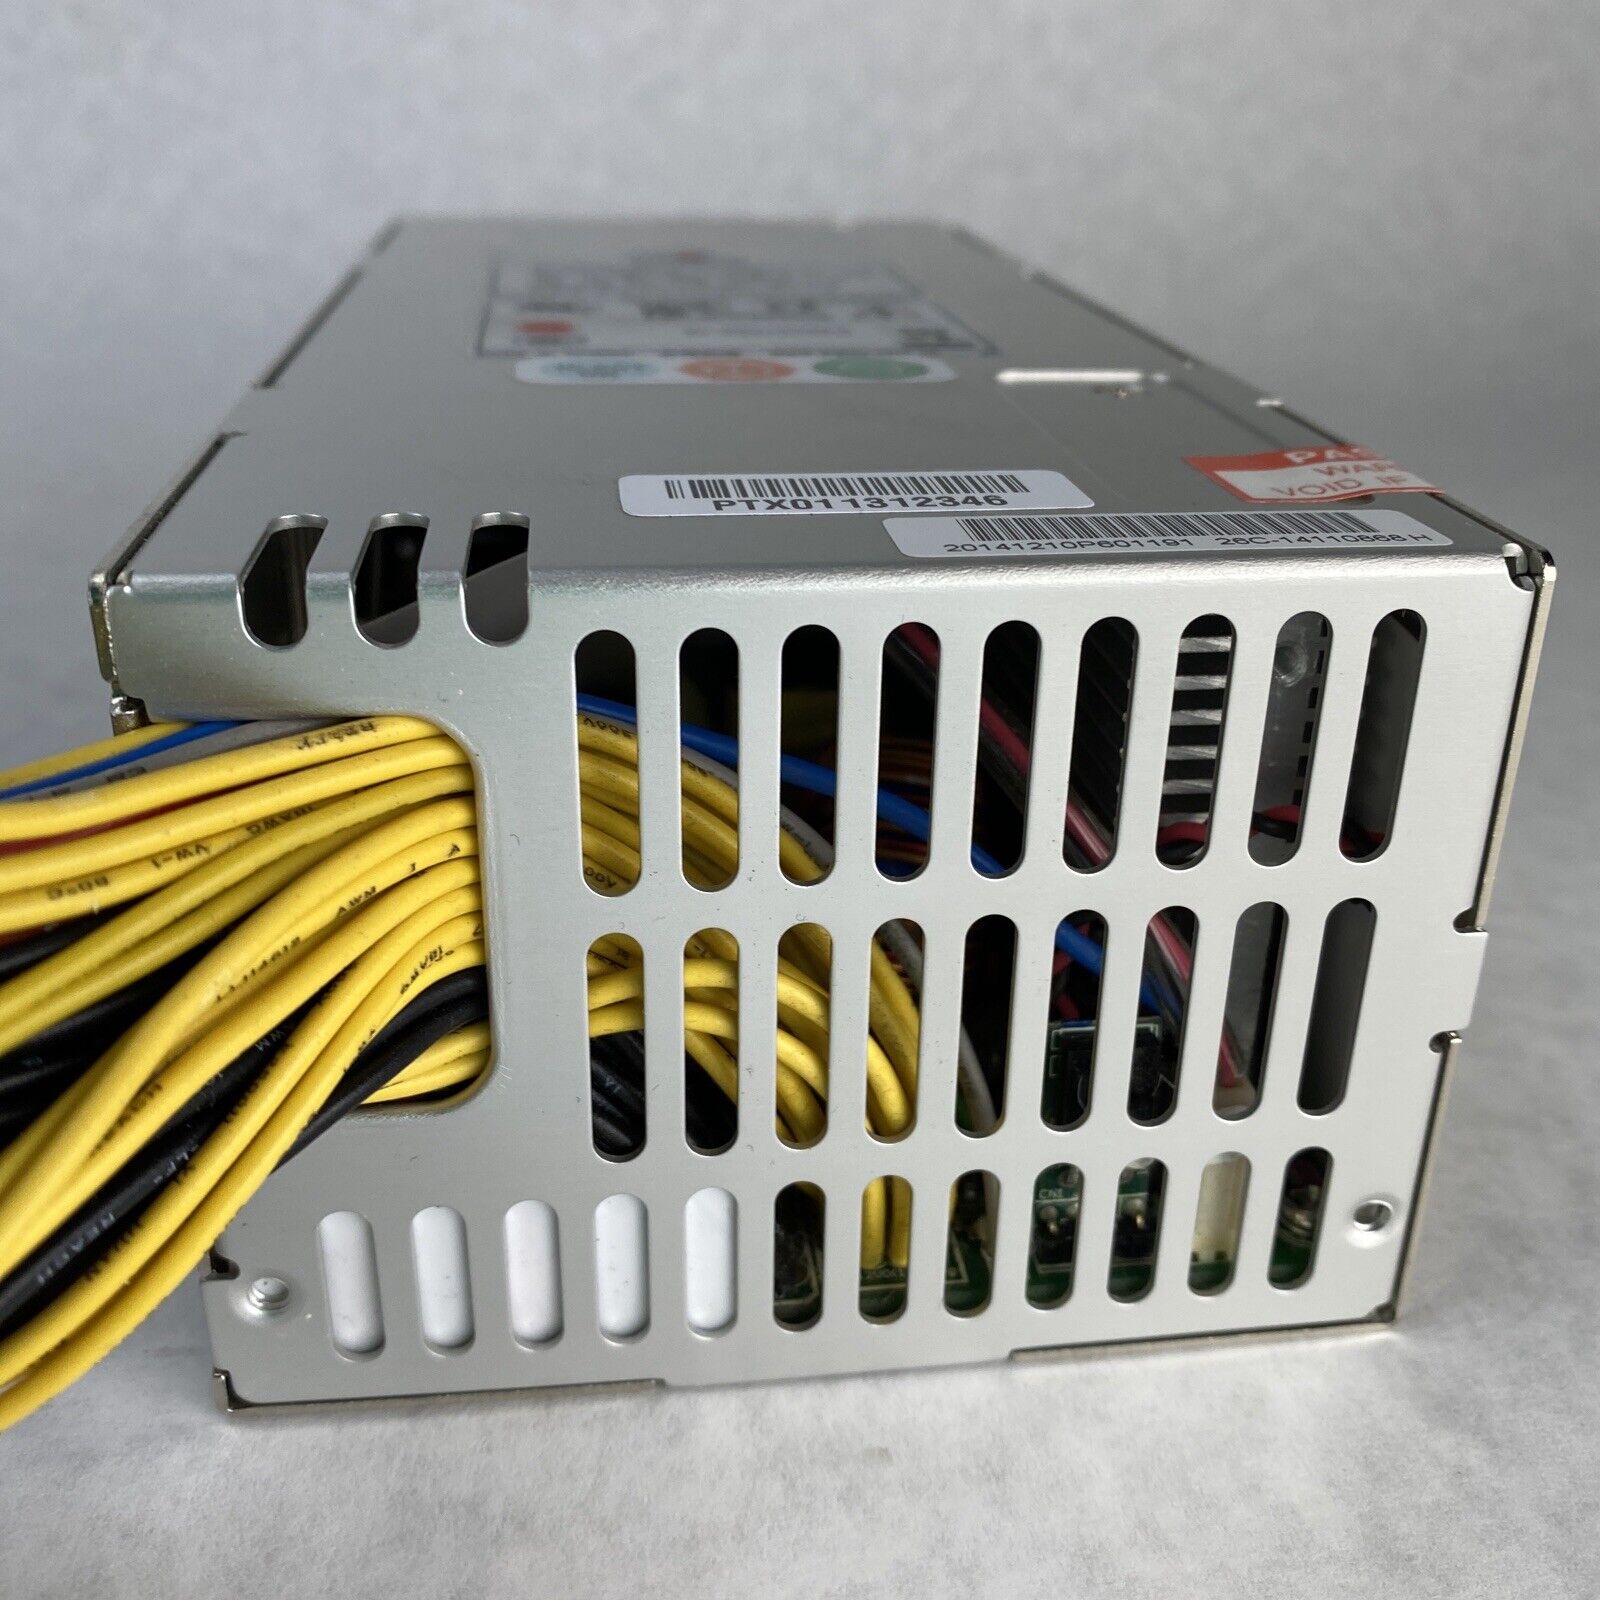 EMACS P2H-5500V 500W B00P2H050V010 2U Server Power Supply